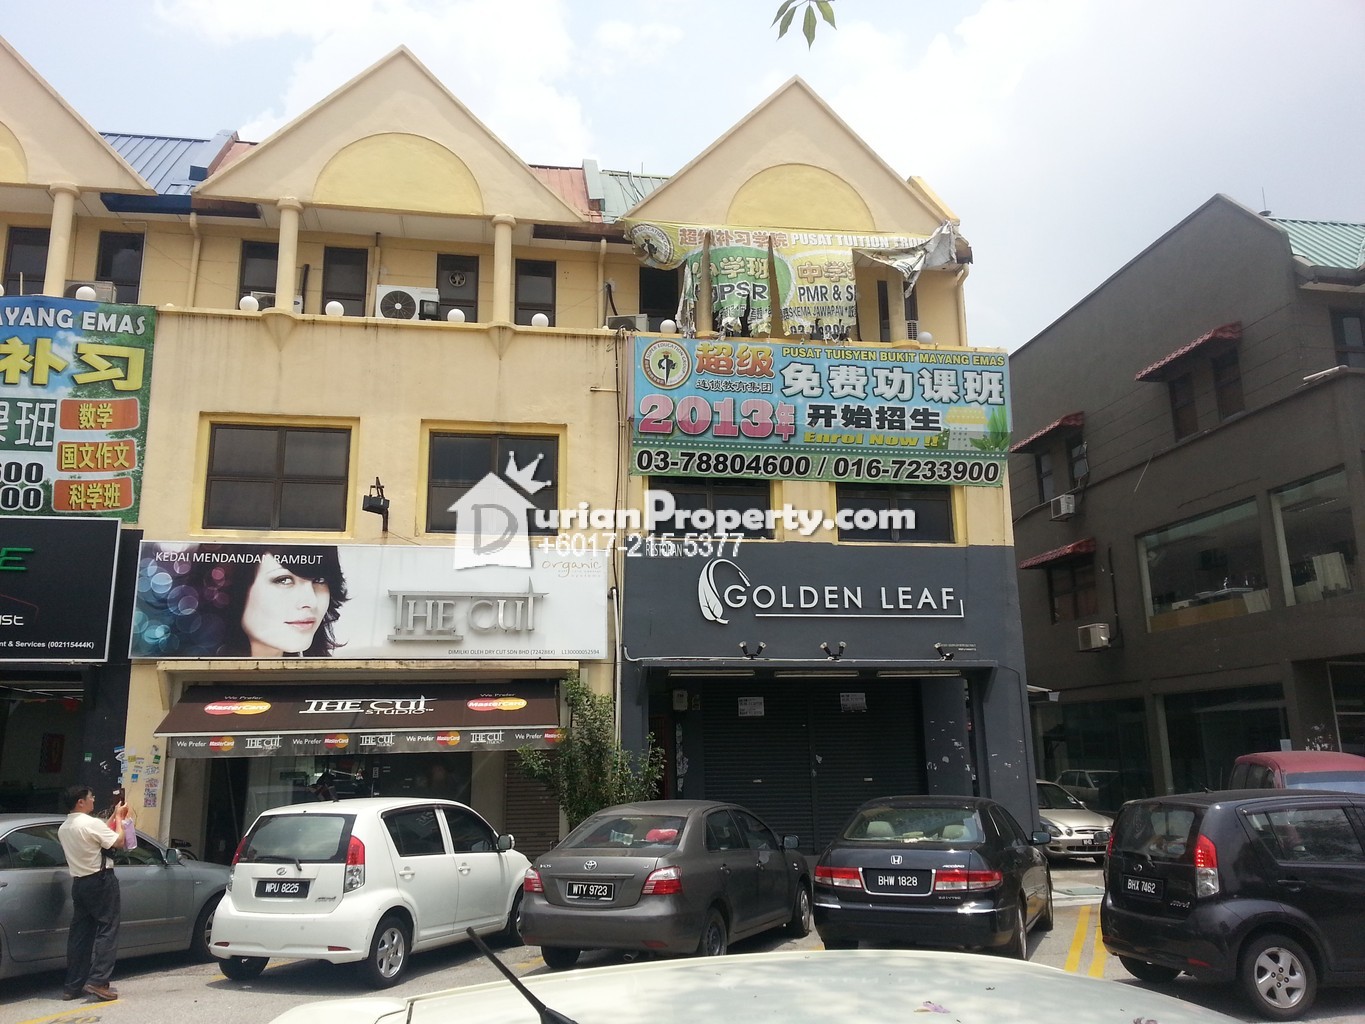 Shop Office For Sale At Taman Bukit Mayang Emas Kelana Jaya For Rm 2 400 000 By Wilson Yong Durianproperty